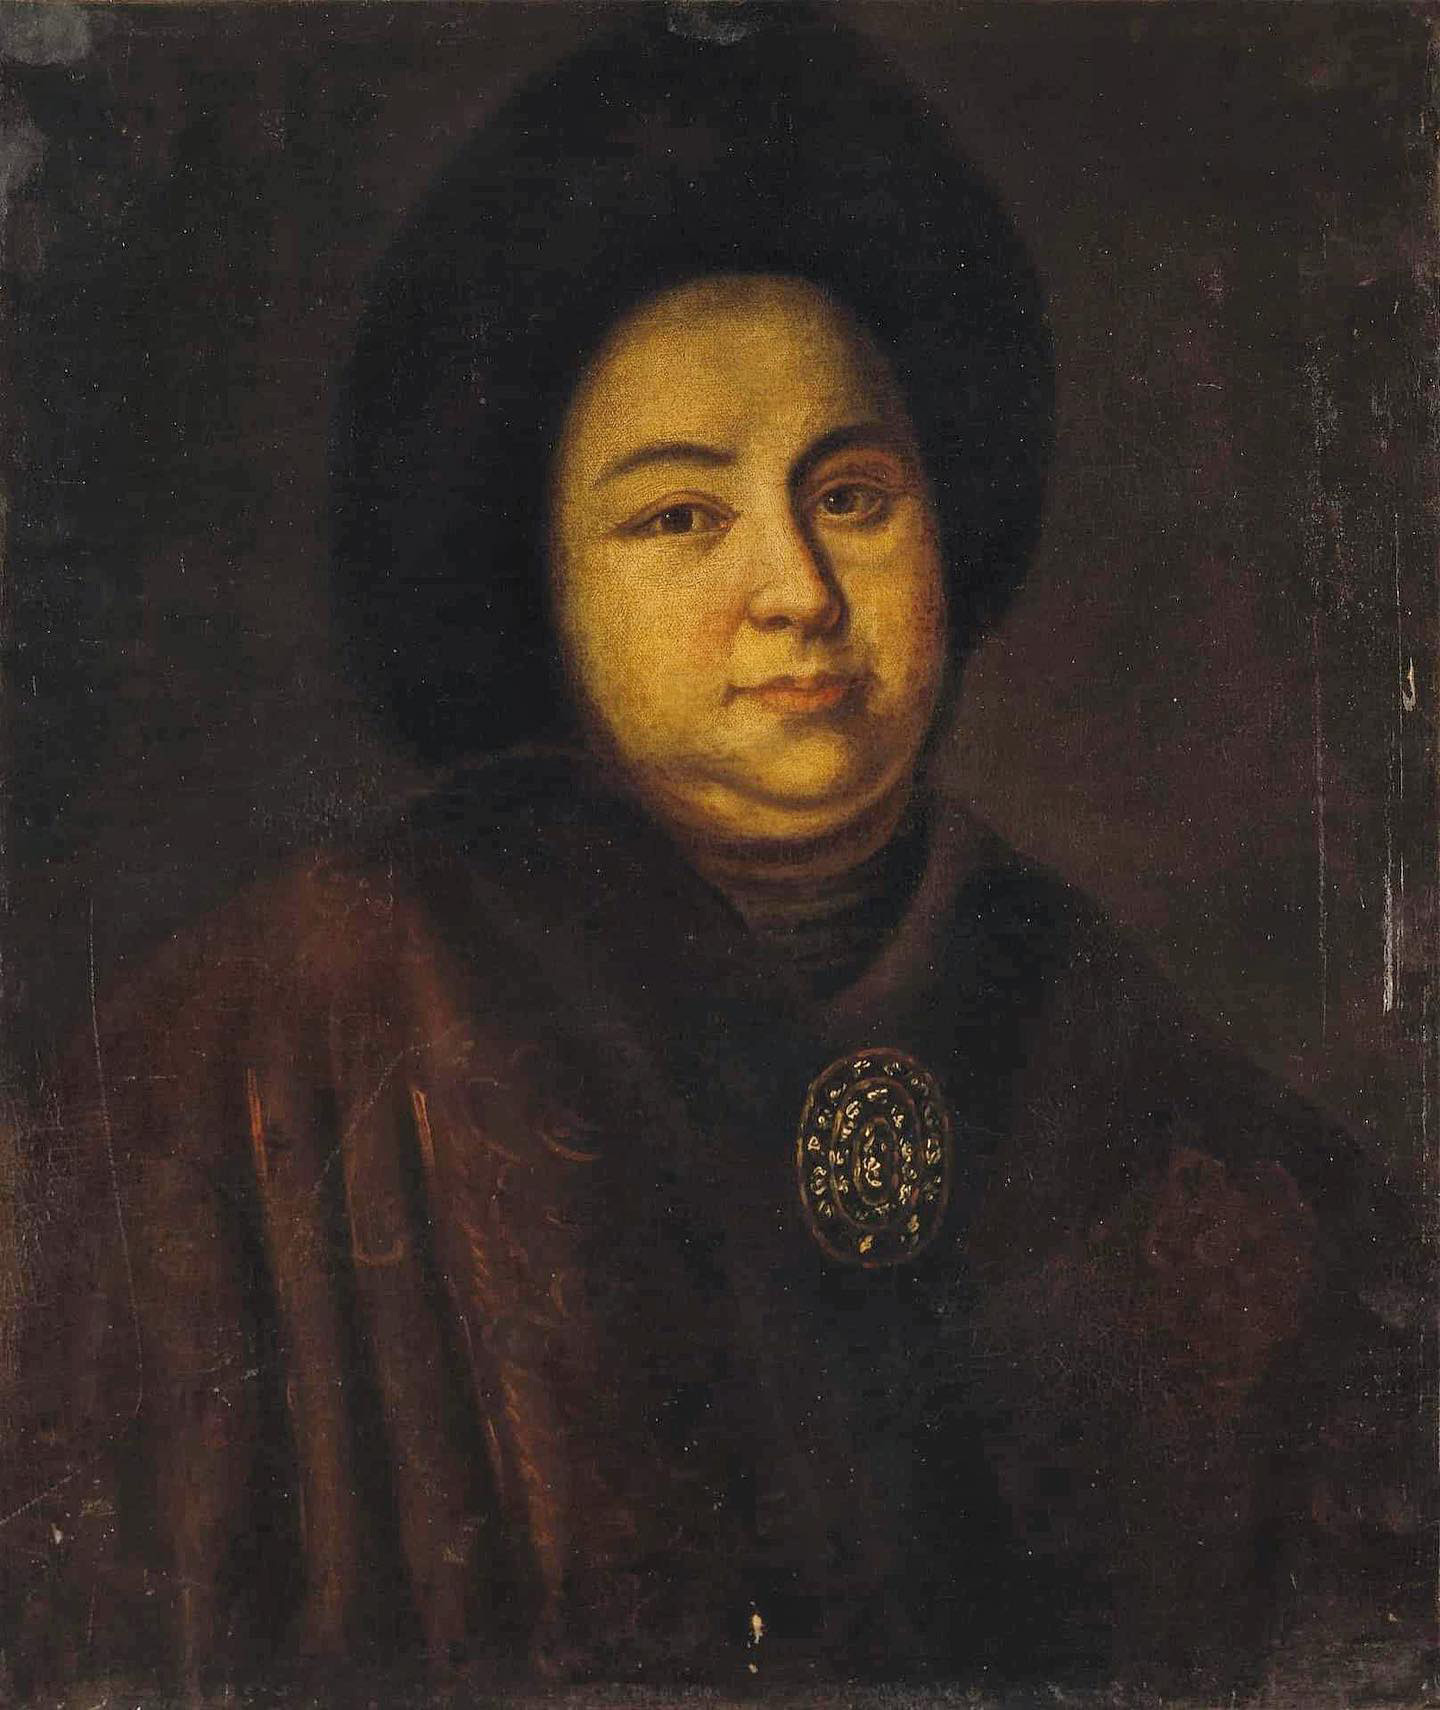 Anonymer Künstler. Porträt der Zarin Ewdokija Lopuchina aus dem 18. Jahrhundert (1669-1731).